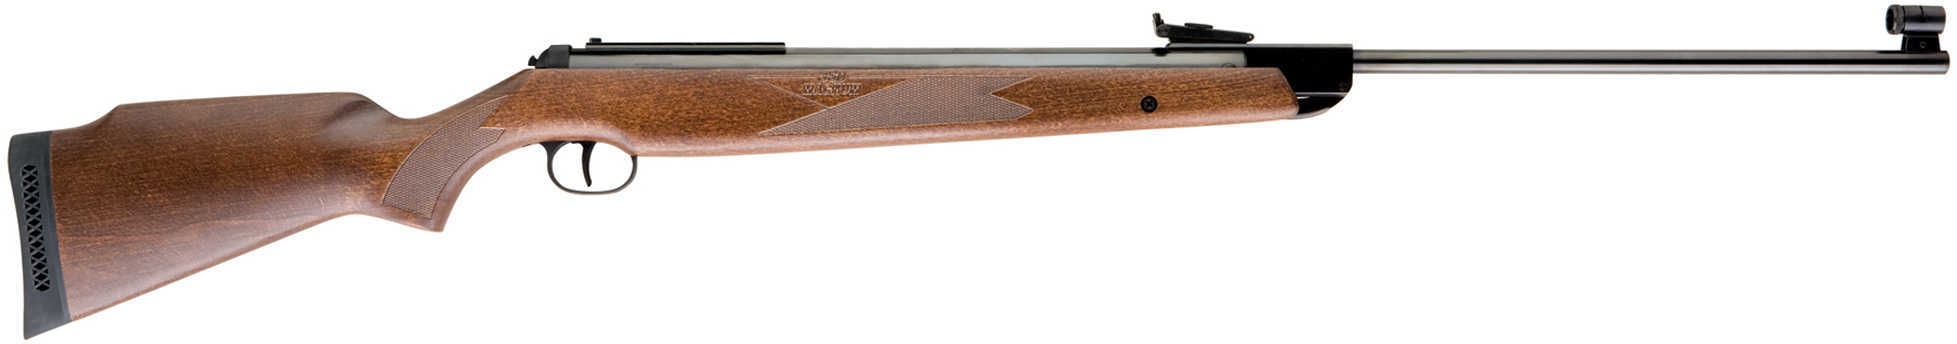 Umarex USA RWS Model 350 Air Rifle .177